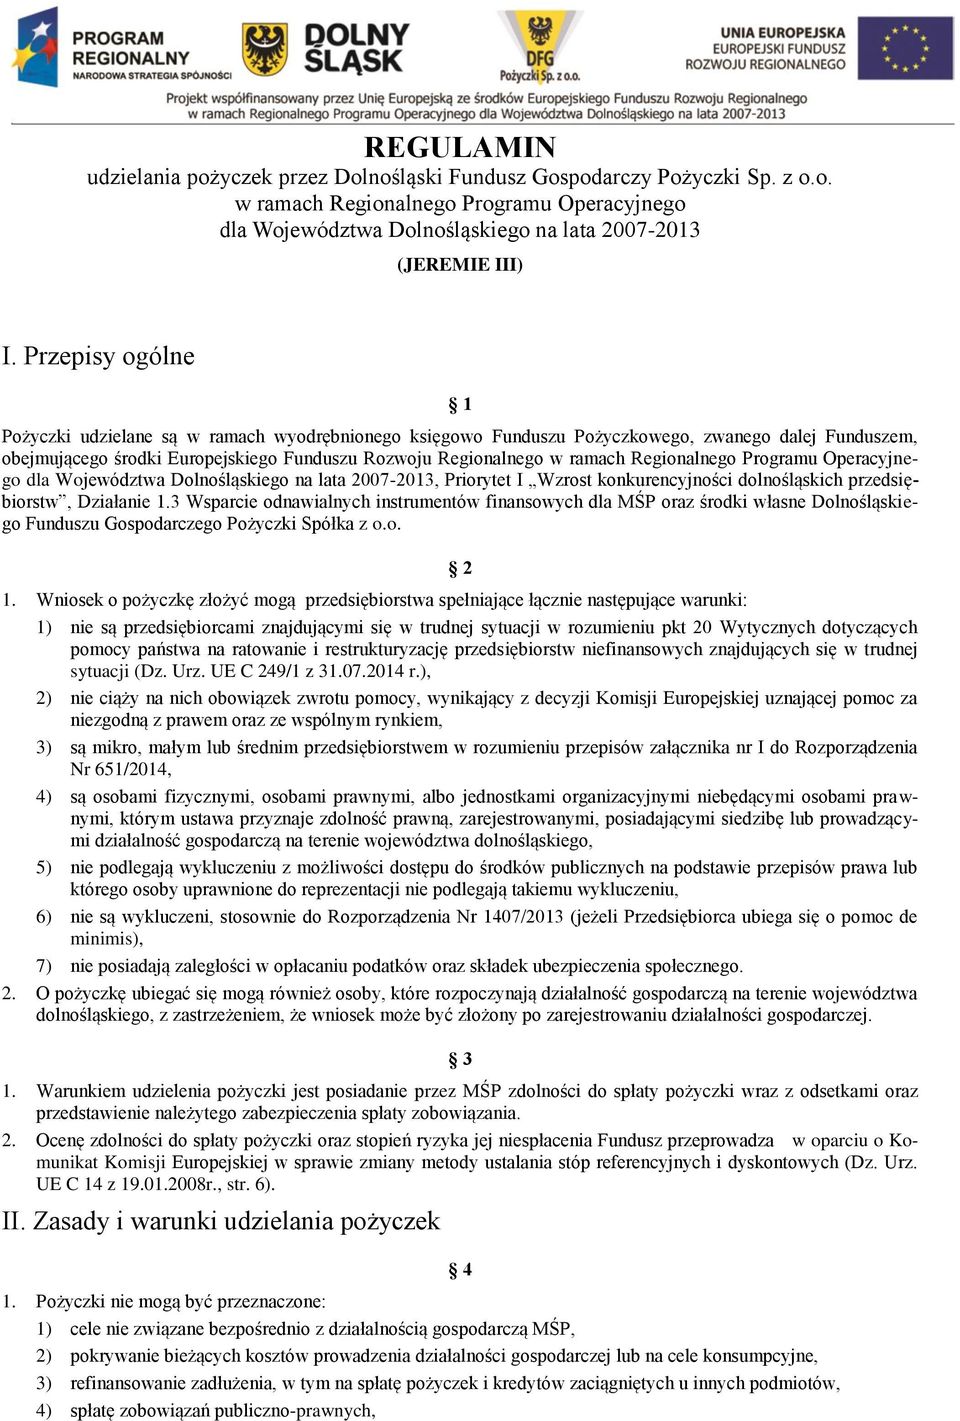 Regionalnego Programu Operacyjnego dla Województwa Dolnośląskiego na lata 2007-2013, Priorytet I Wzrost konkurencyjności dolnośląskich przedsiębiorstw, Działanie 1.